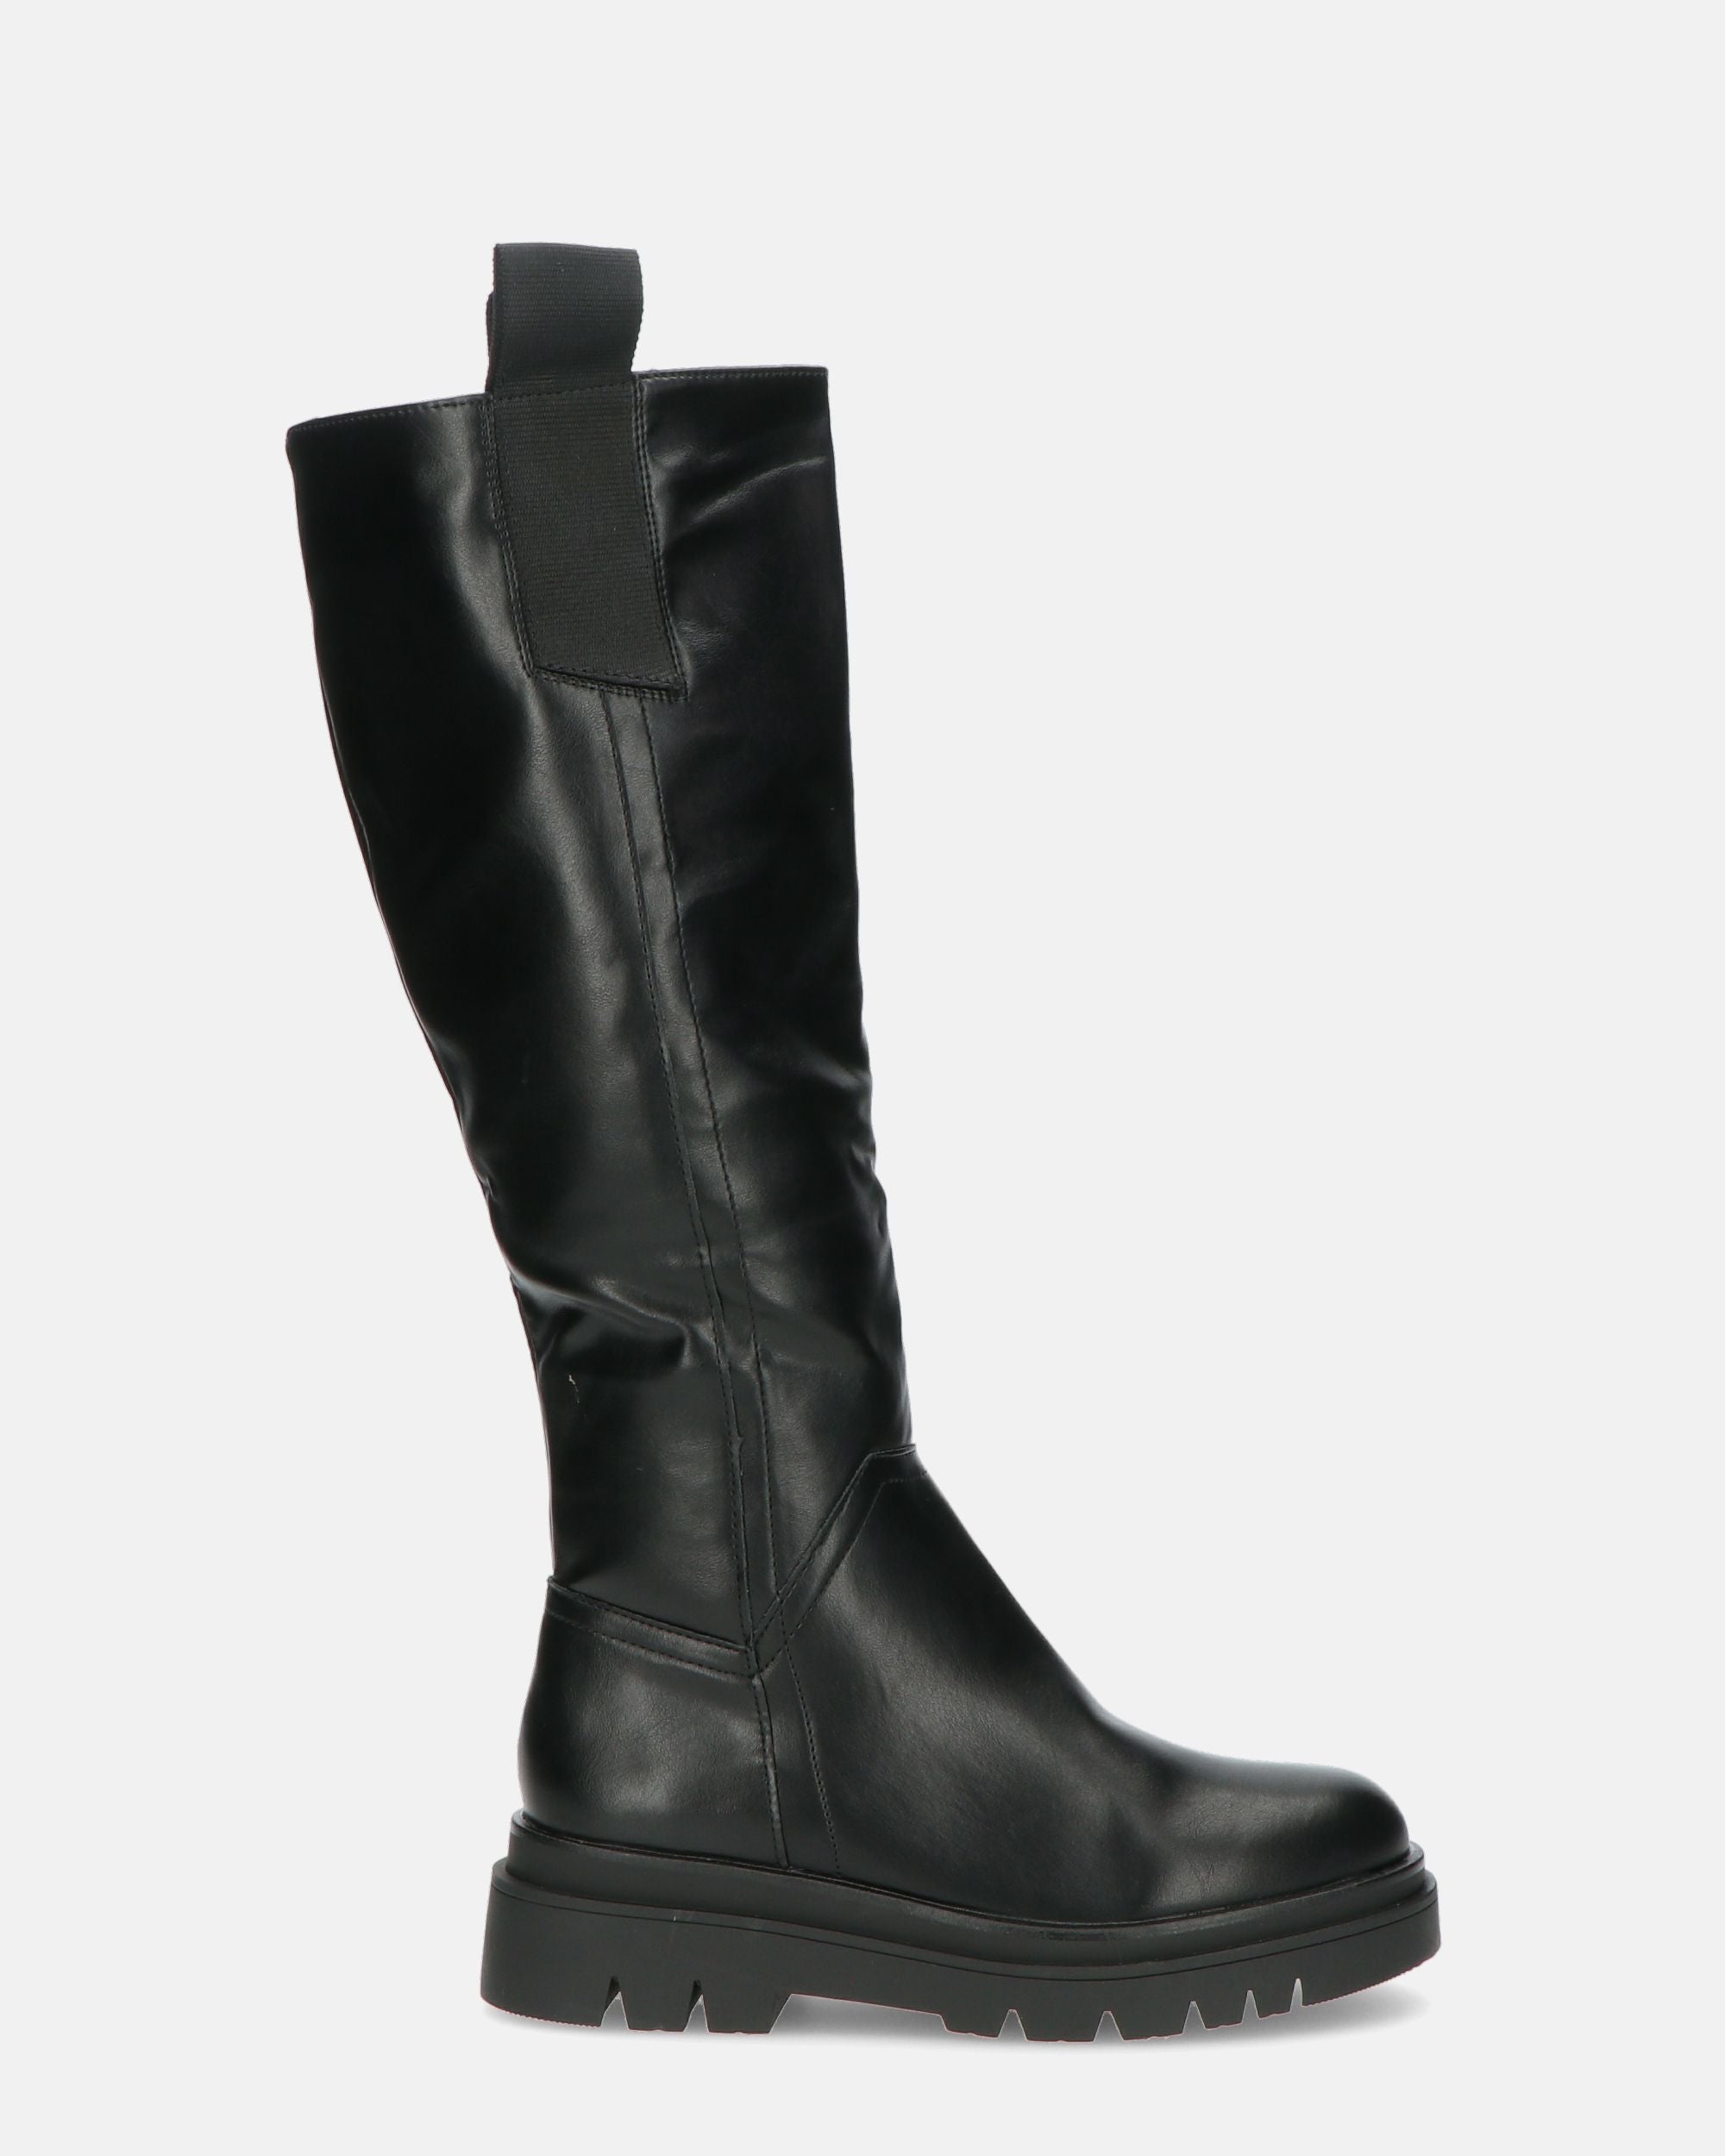 DETA - high boot in black with zip